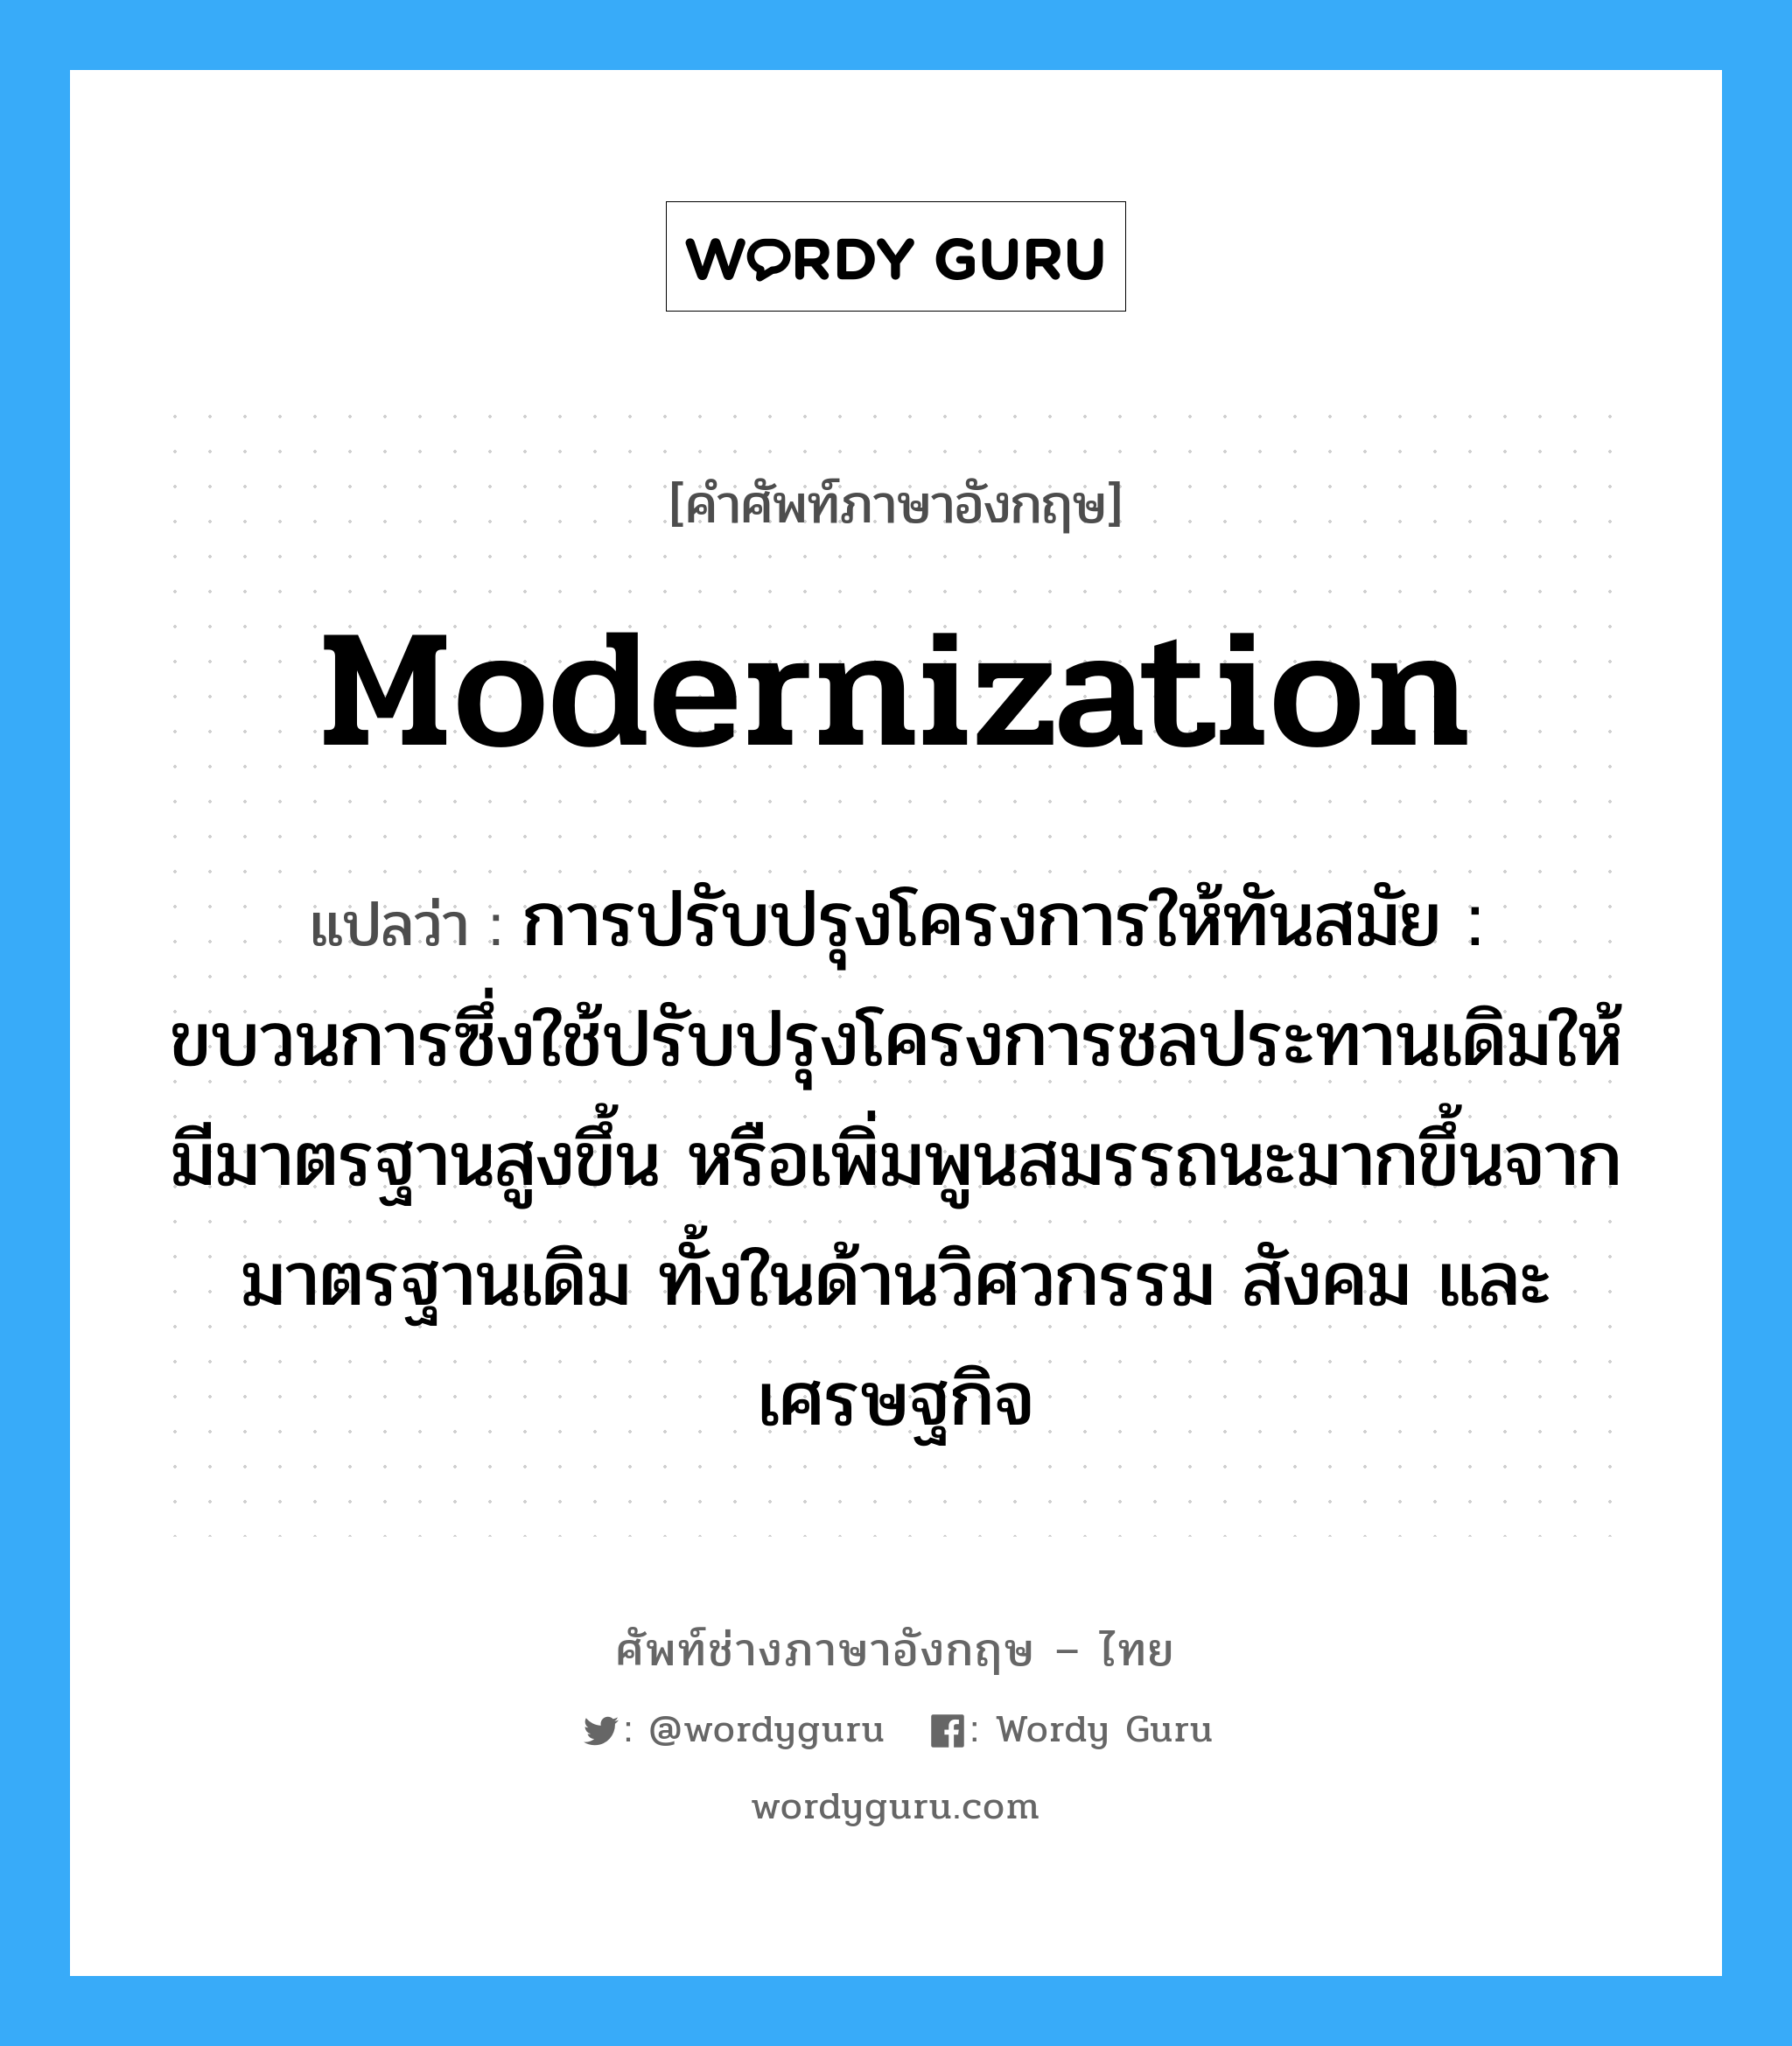 modernization แปลว่า?, คำศัพท์ช่างภาษาอังกฤษ - ไทย modernization คำศัพท์ภาษาอังกฤษ modernization แปลว่า การปรับปรุงโครงการให้ทันสมัย : ขบวนการซึ่งใช้ปรับปรุงโครงการชลประทานเดิมให้มีมาตรฐานสูงขึ้น หรือเพิ่มพูนสมรรถนะมากขึ้นจากมาตรฐานเดิม ทั้งในด้านวิศวกรรม สังคม และเศรษฐกิจ